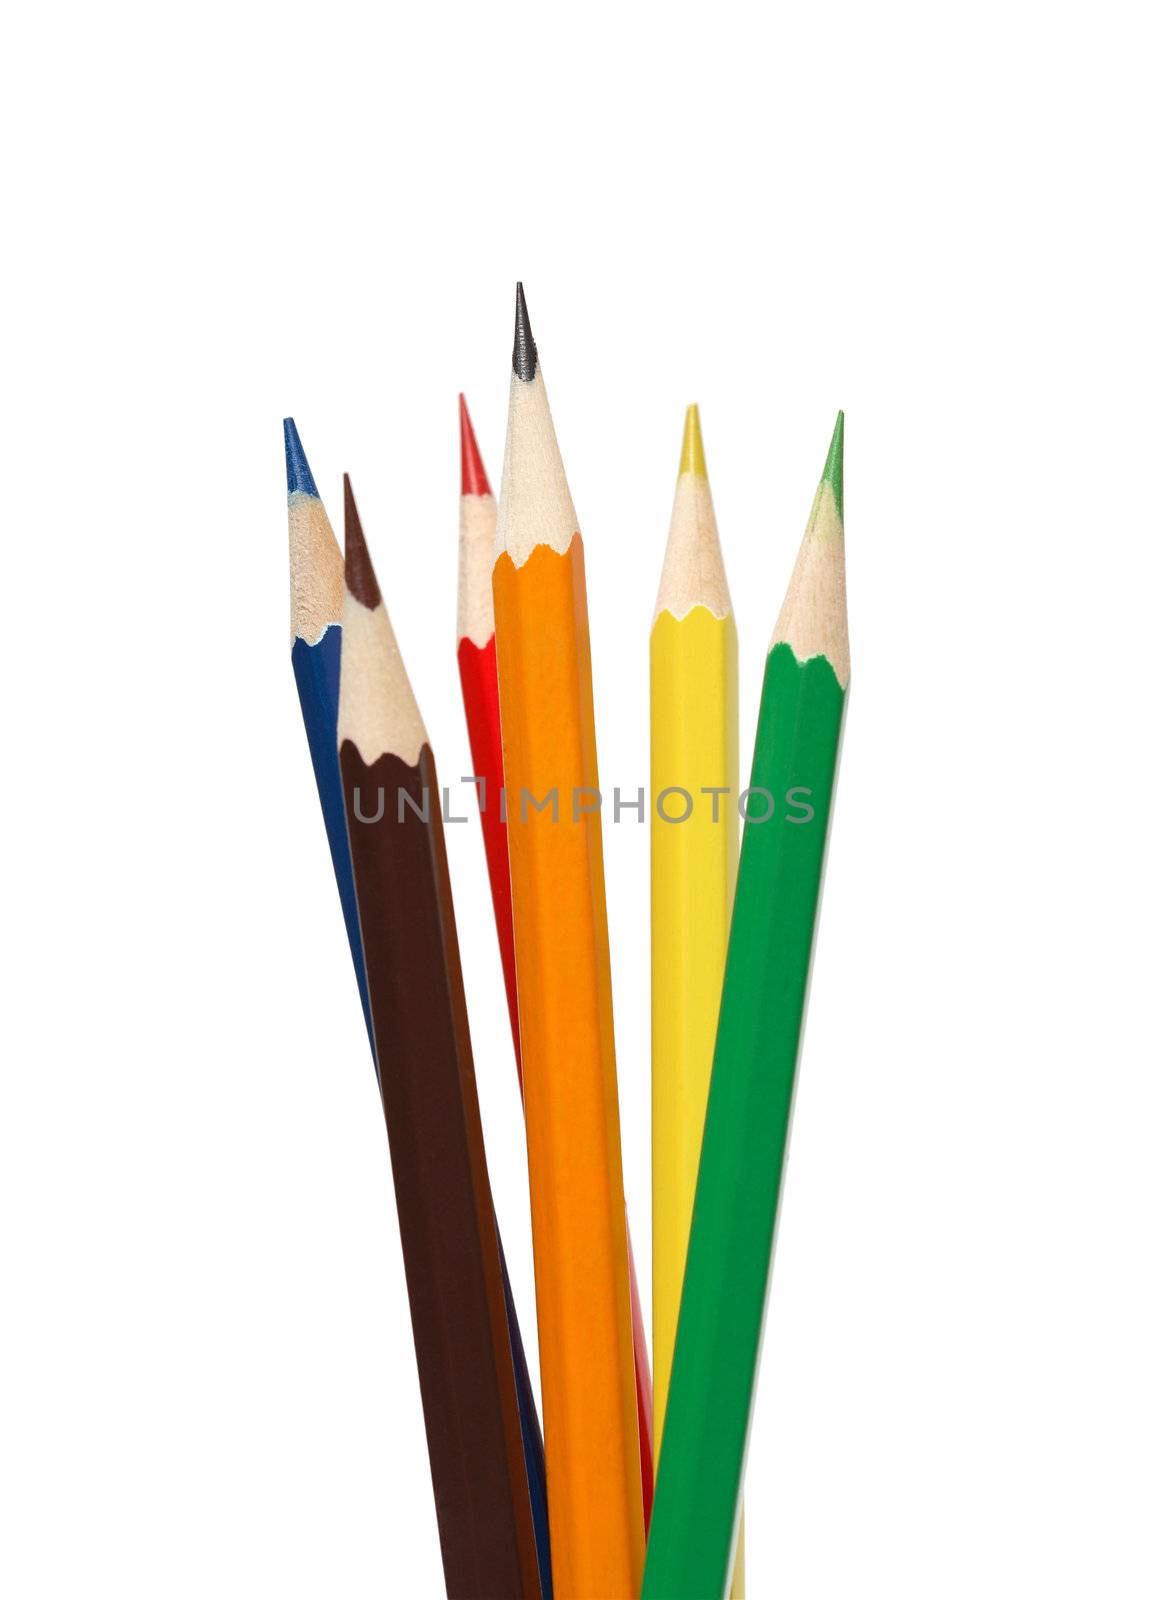 Color Pencils by kvkirillov